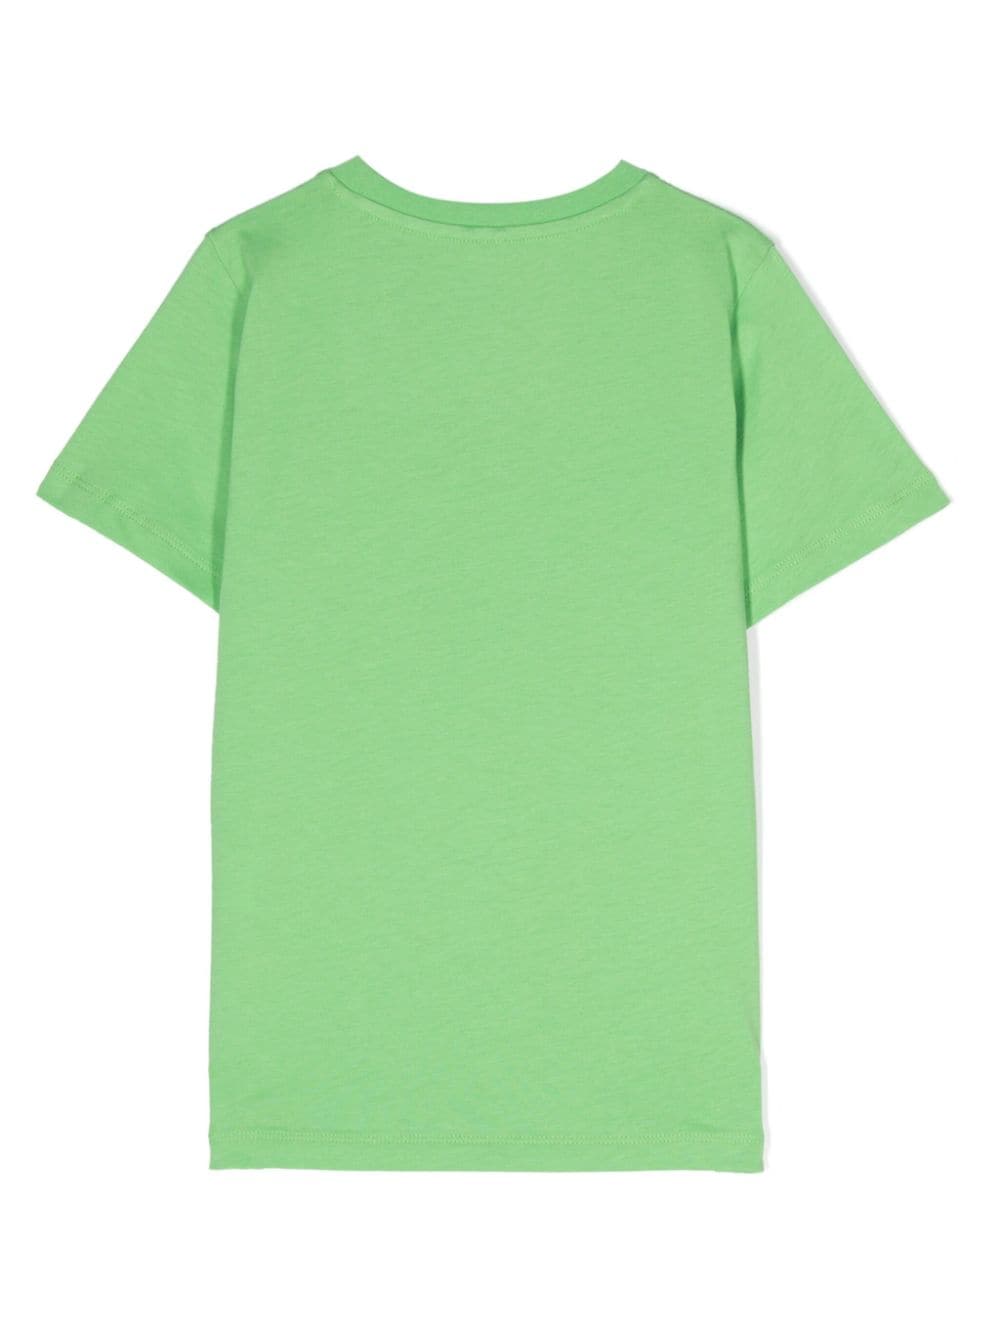 Stella McCartney Kids sun-print cotton T-shirt - Groen